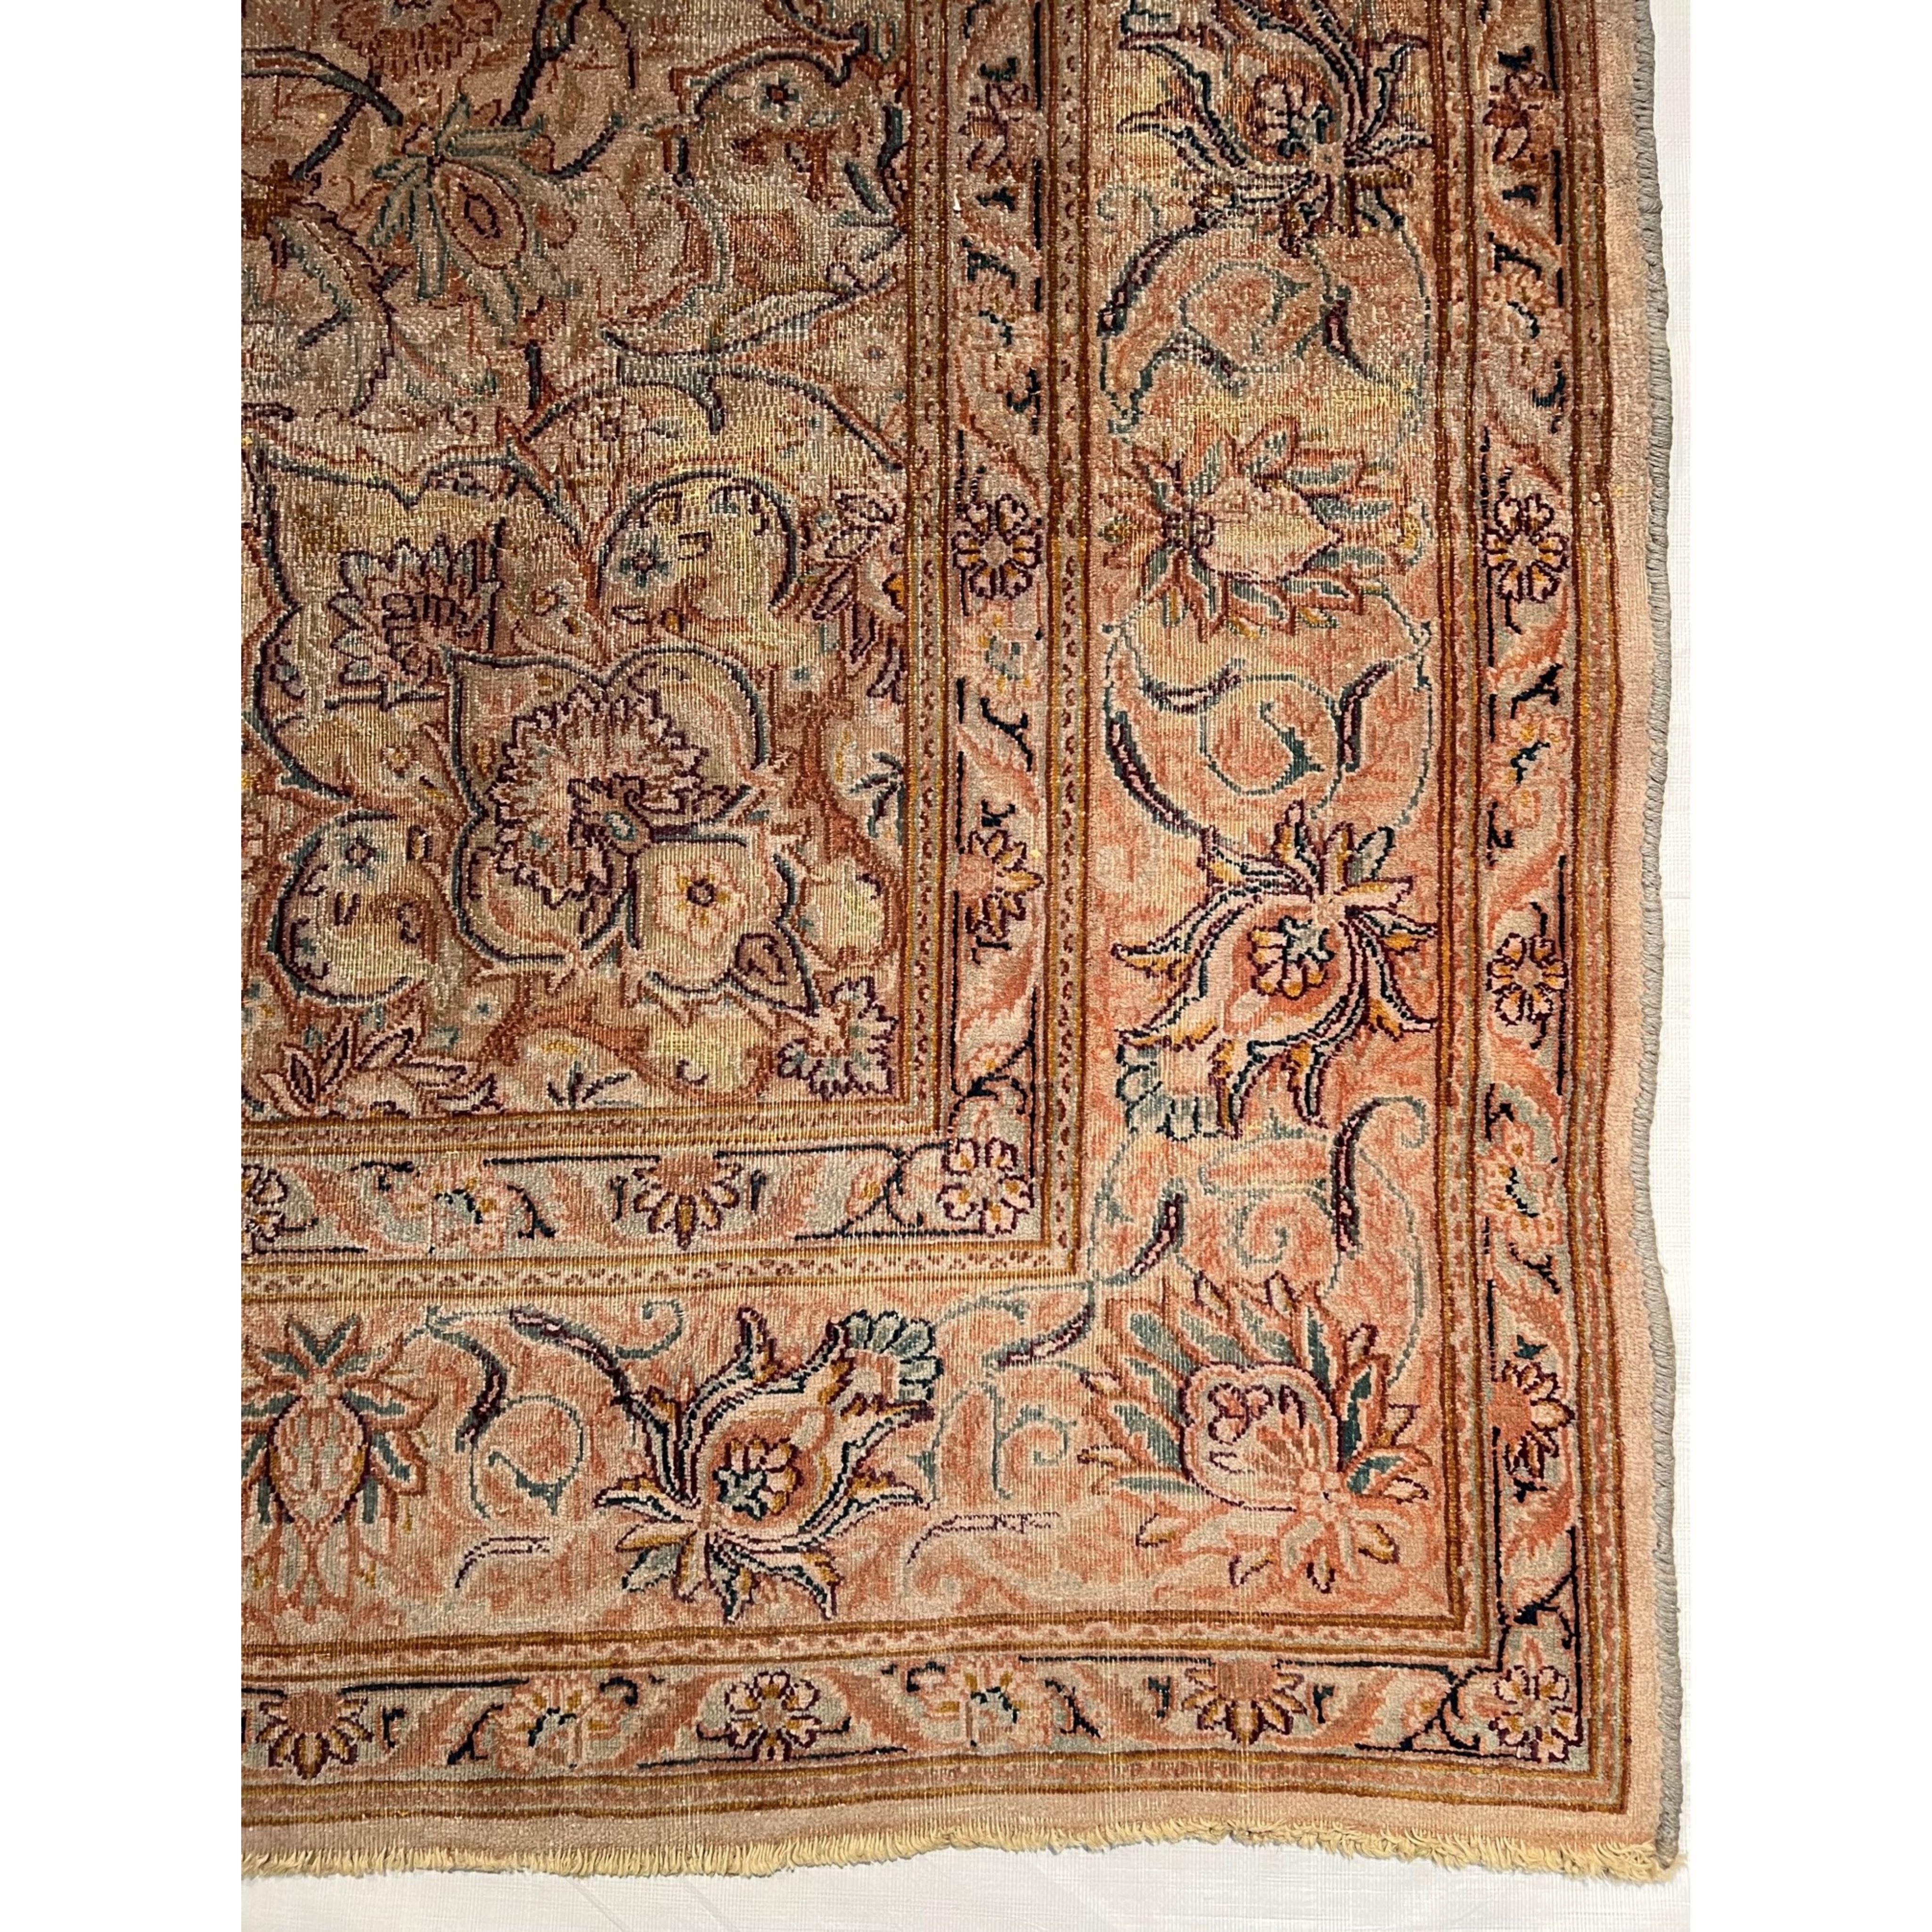 Les tapis turcs (également appelés tapis d'Anatolie) sont sans doute les tapis qui ont tout déclenché. Ces tapis font partie de la première vague de tapis anciens orientaux exportés en Europe. Les tapis turcs vintage étaient des produits très prisés